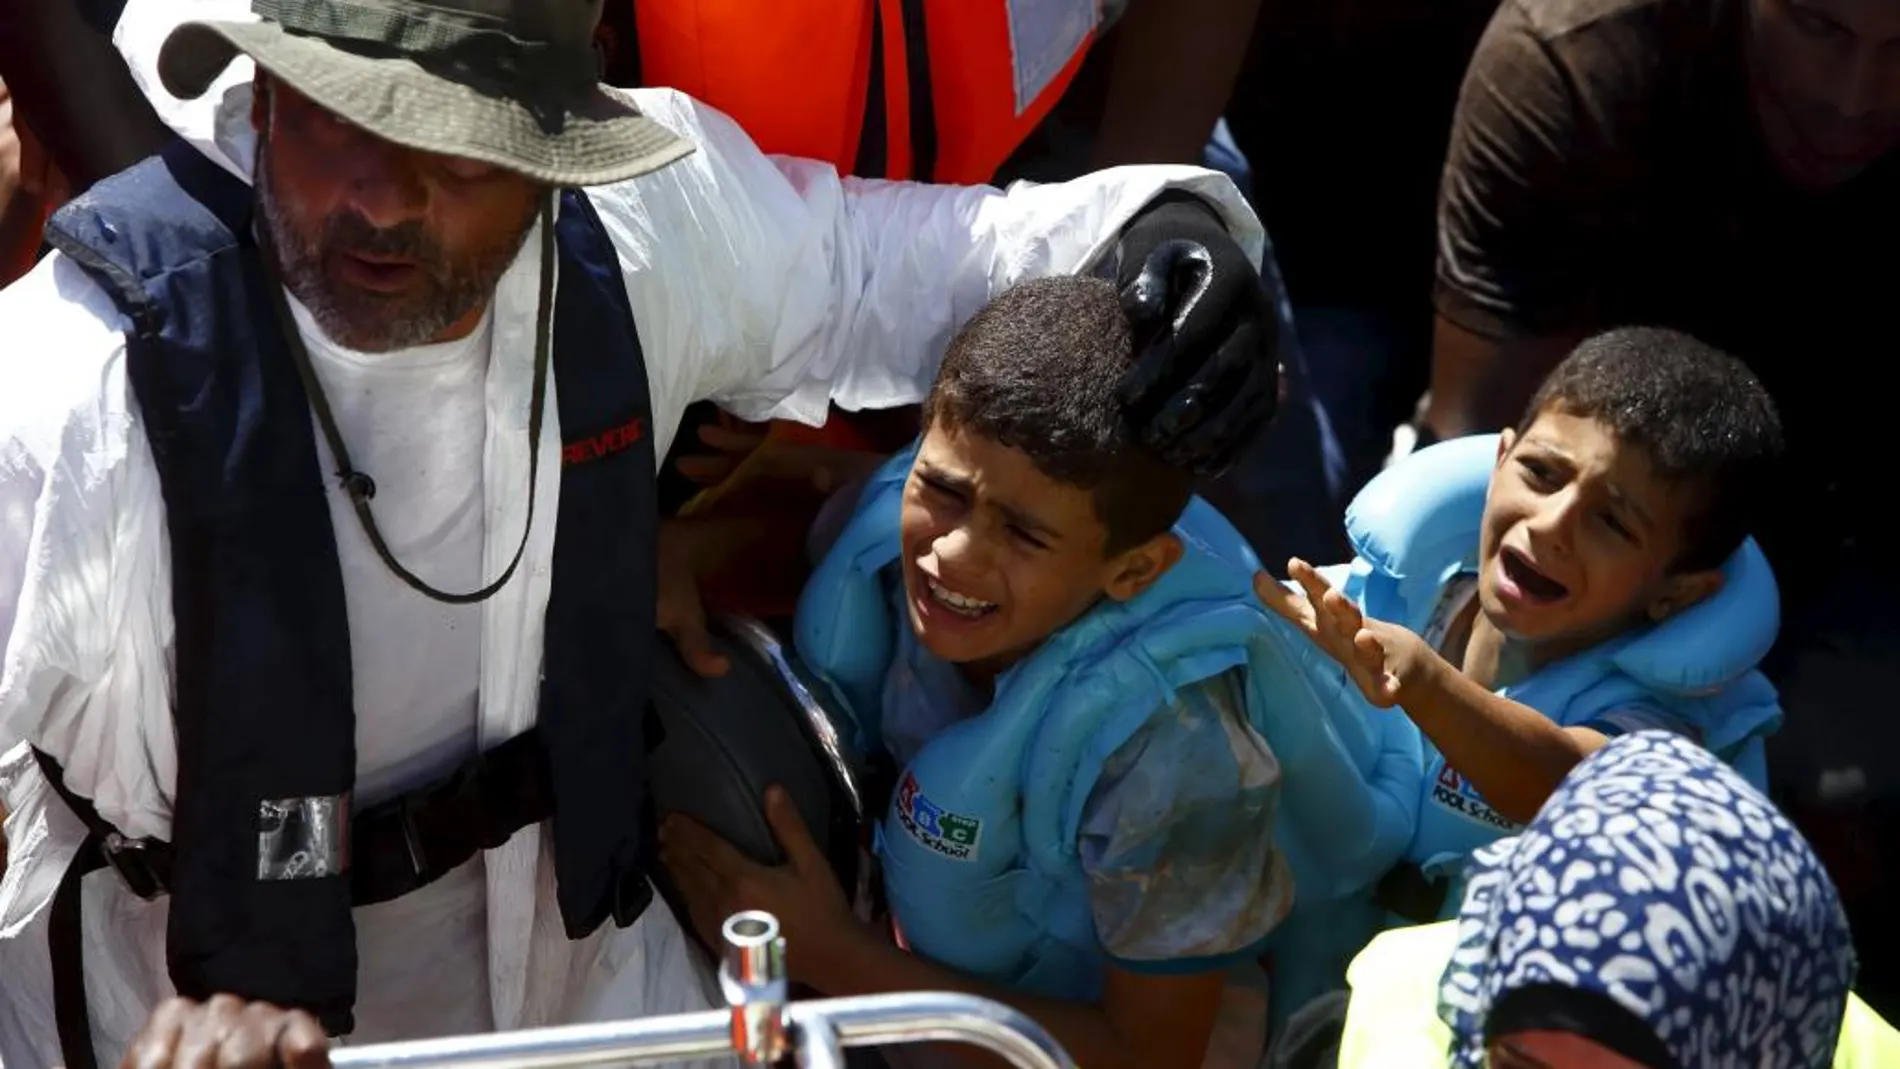 Imagen de dos menores rescatados el pasado 6 de agosto de otra barcaza frente a las costas de Libia